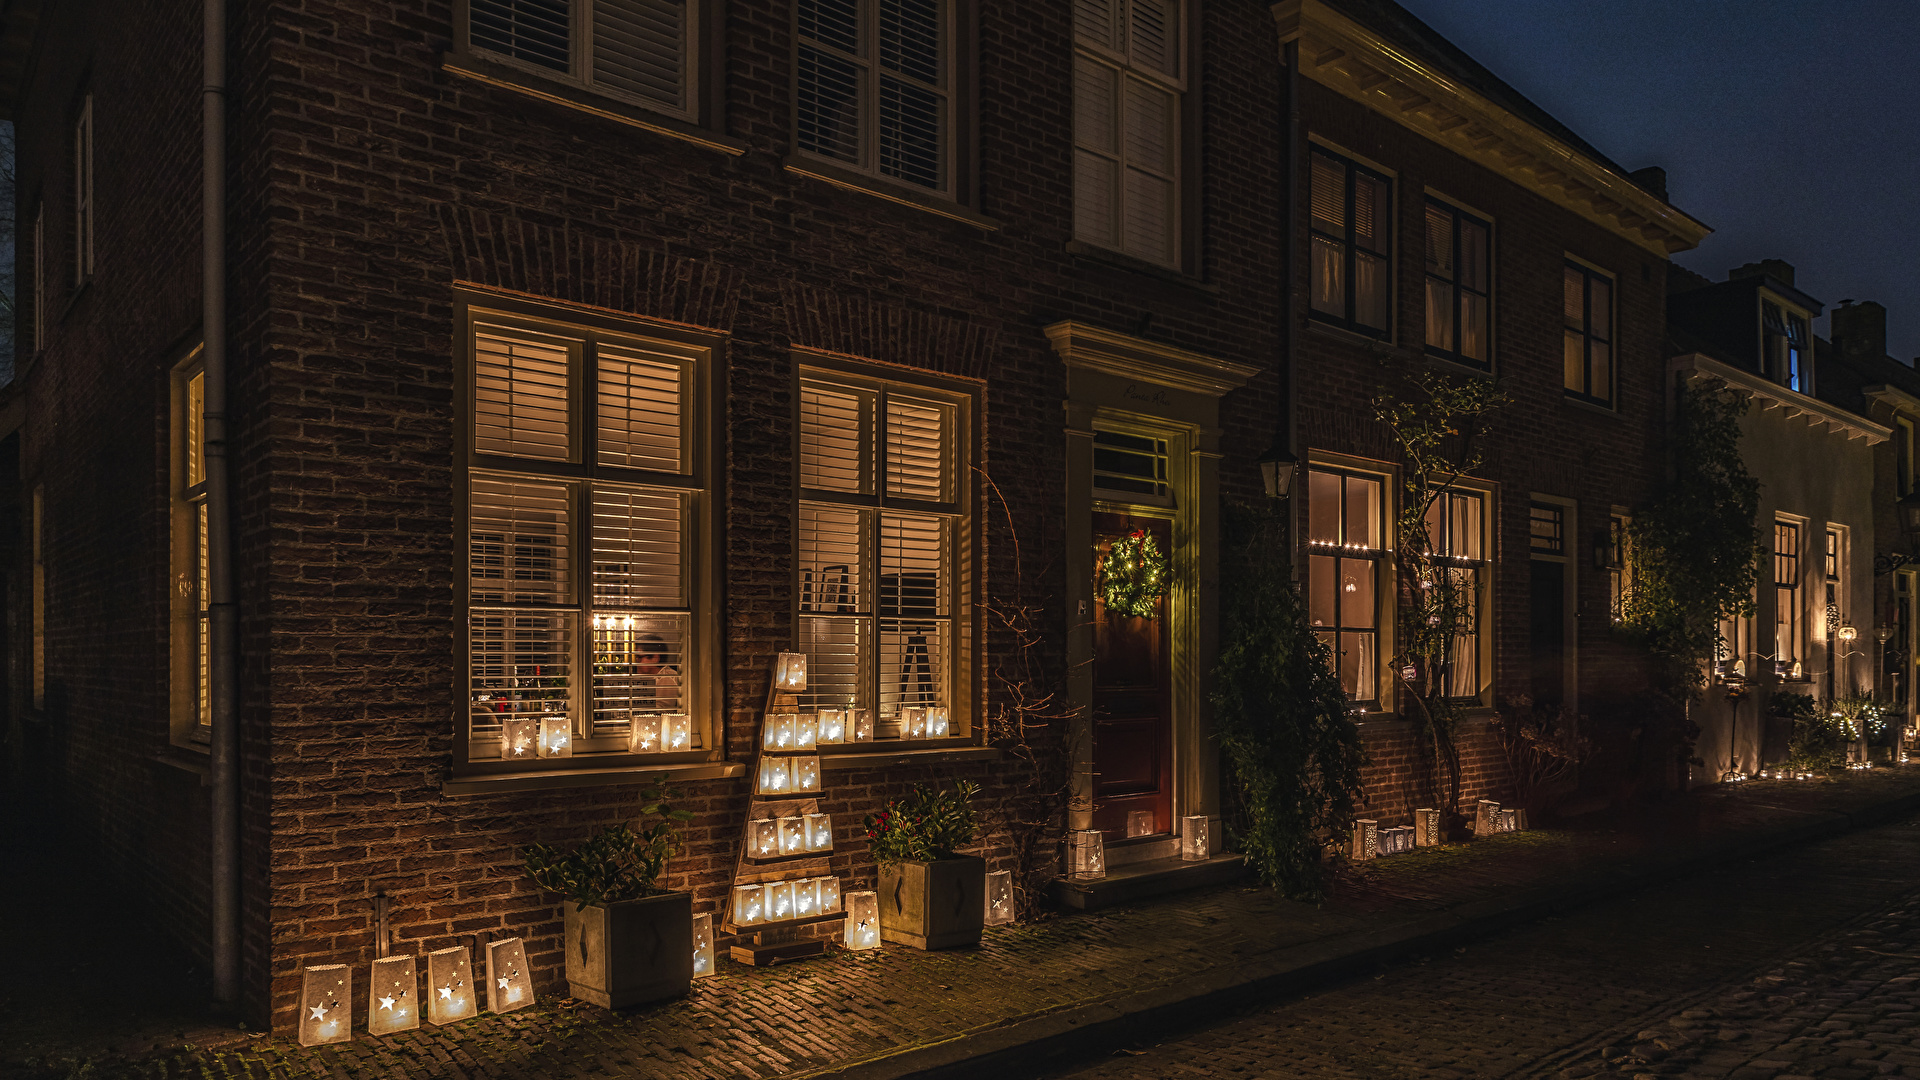 Картинки Новый год голландия фонари Buren Guelders улиц в 1920x1080